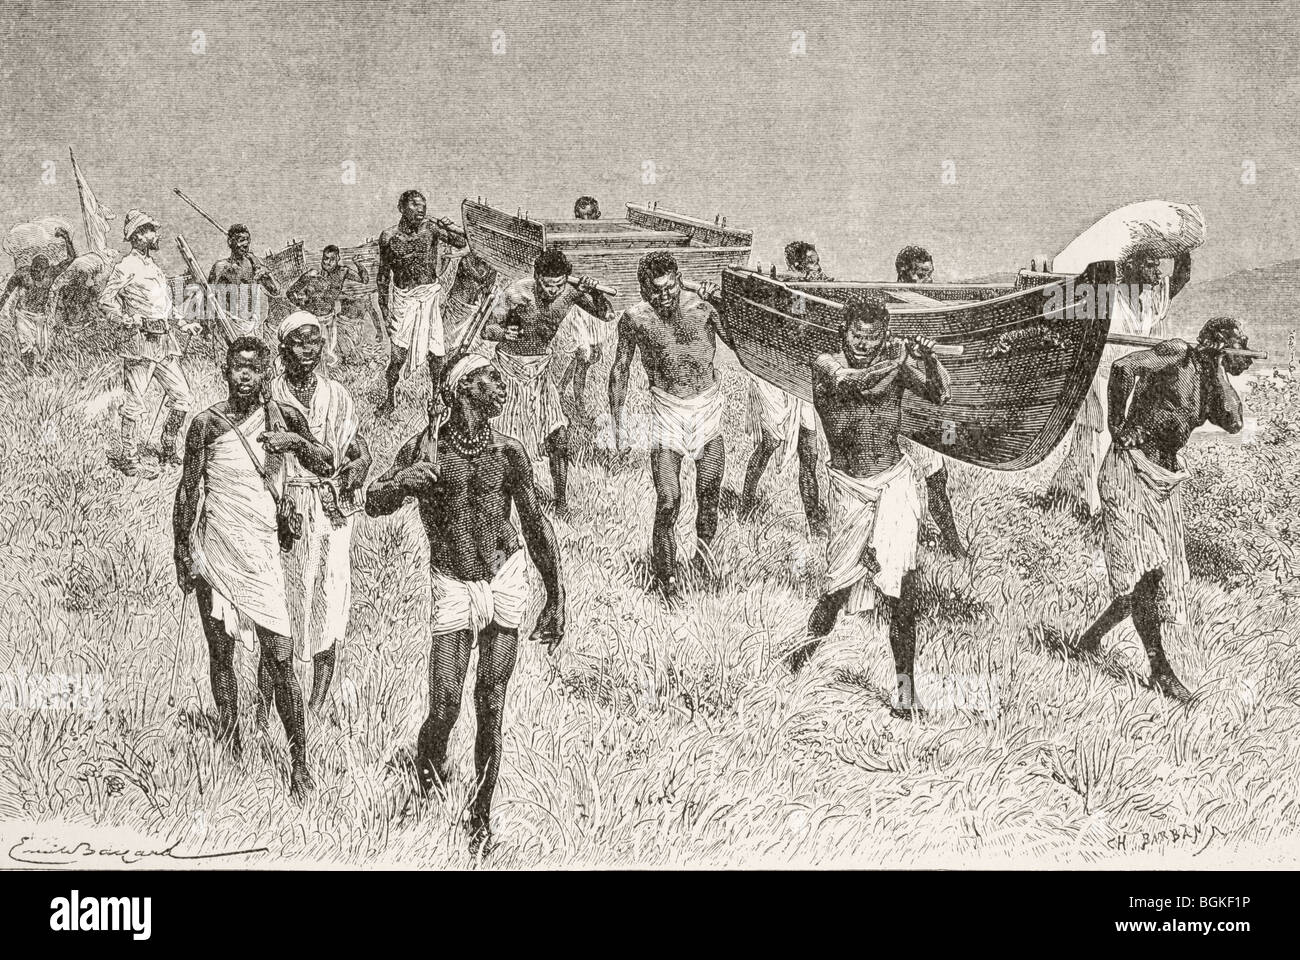 Porteurs africains exerçant son Sir Henry Morton Stanley's démantelé voile Lady Alice lors de son expédition pour explorer le lac Victoria. Banque D'Images